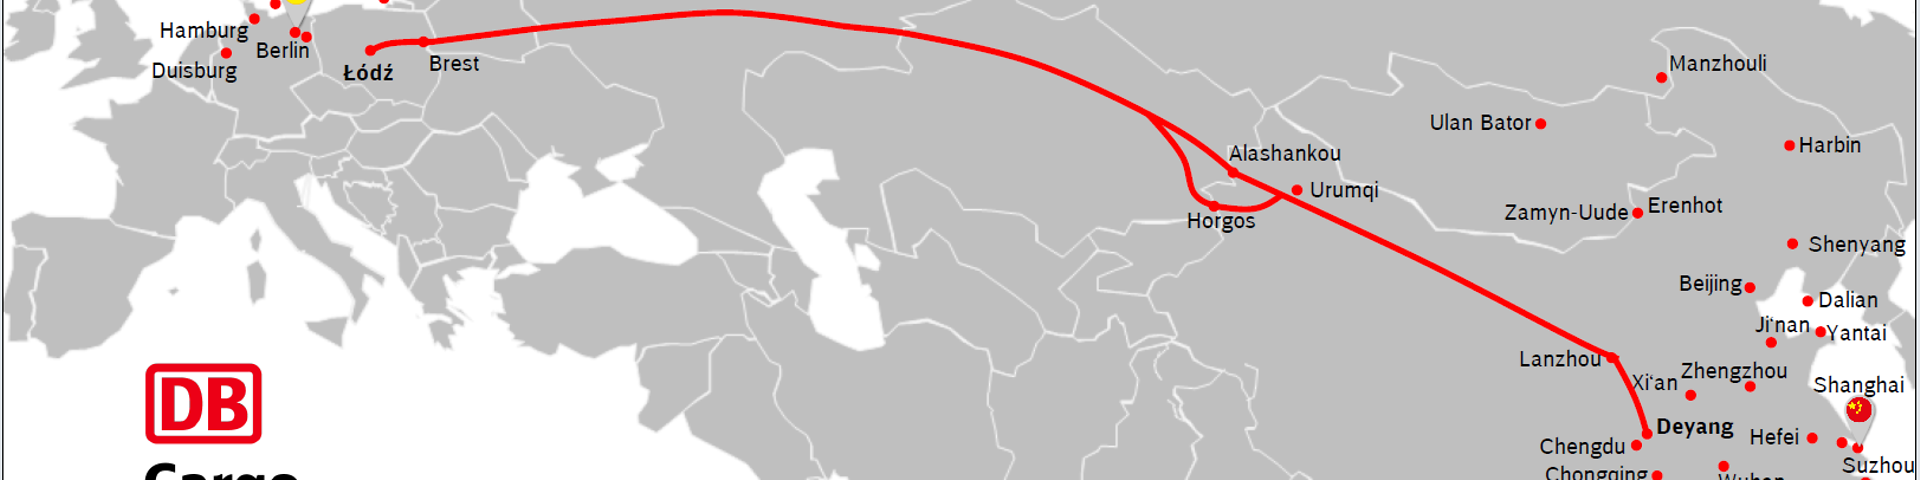 Route between Deyang and Lodz